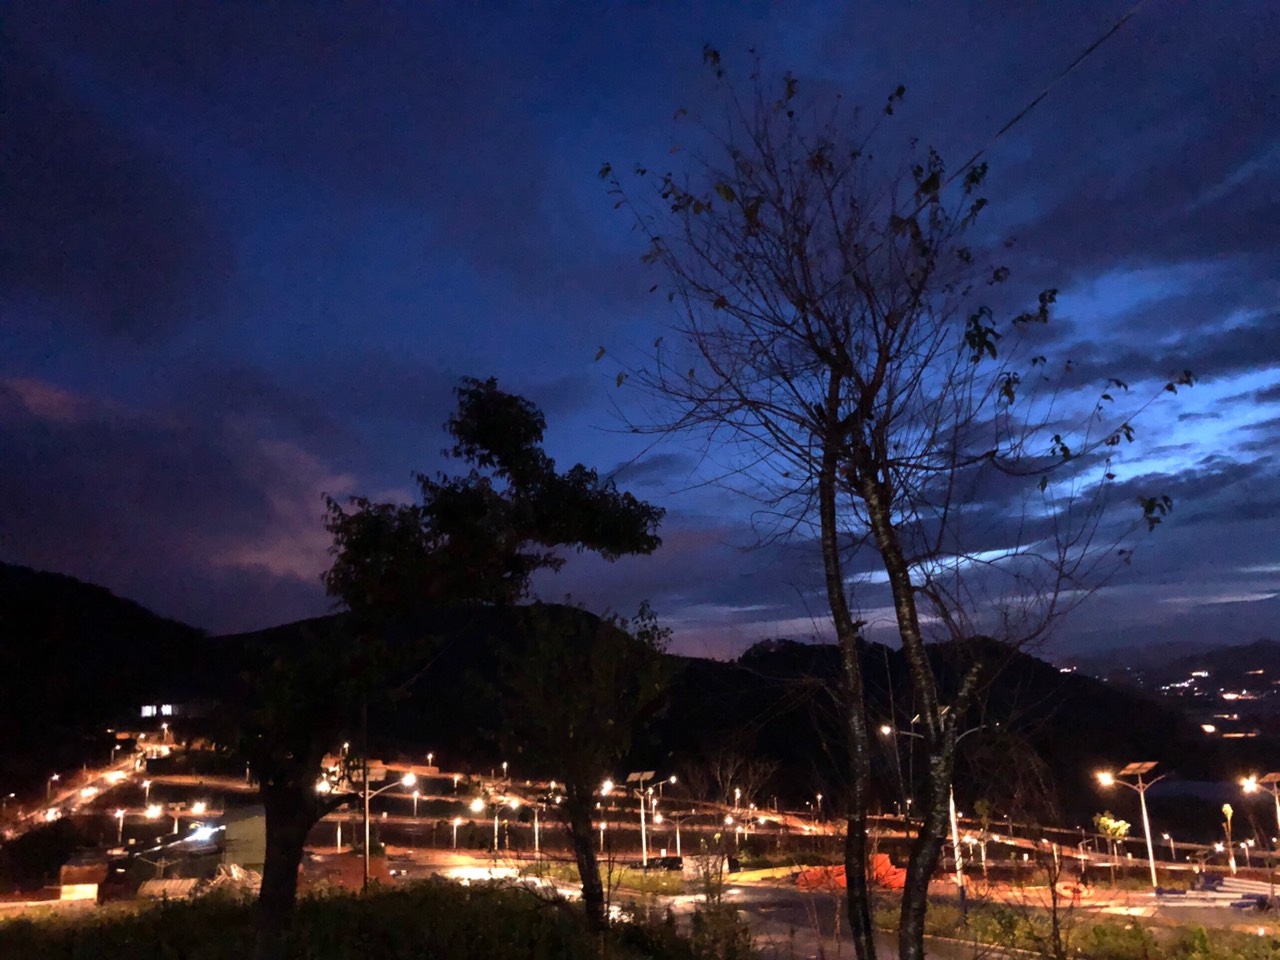 Cảnh bầu trời về đêm với nhiều đám mây, dưới mặt đất có nhiều cây xanh và bóng đèn đang thắp sáng